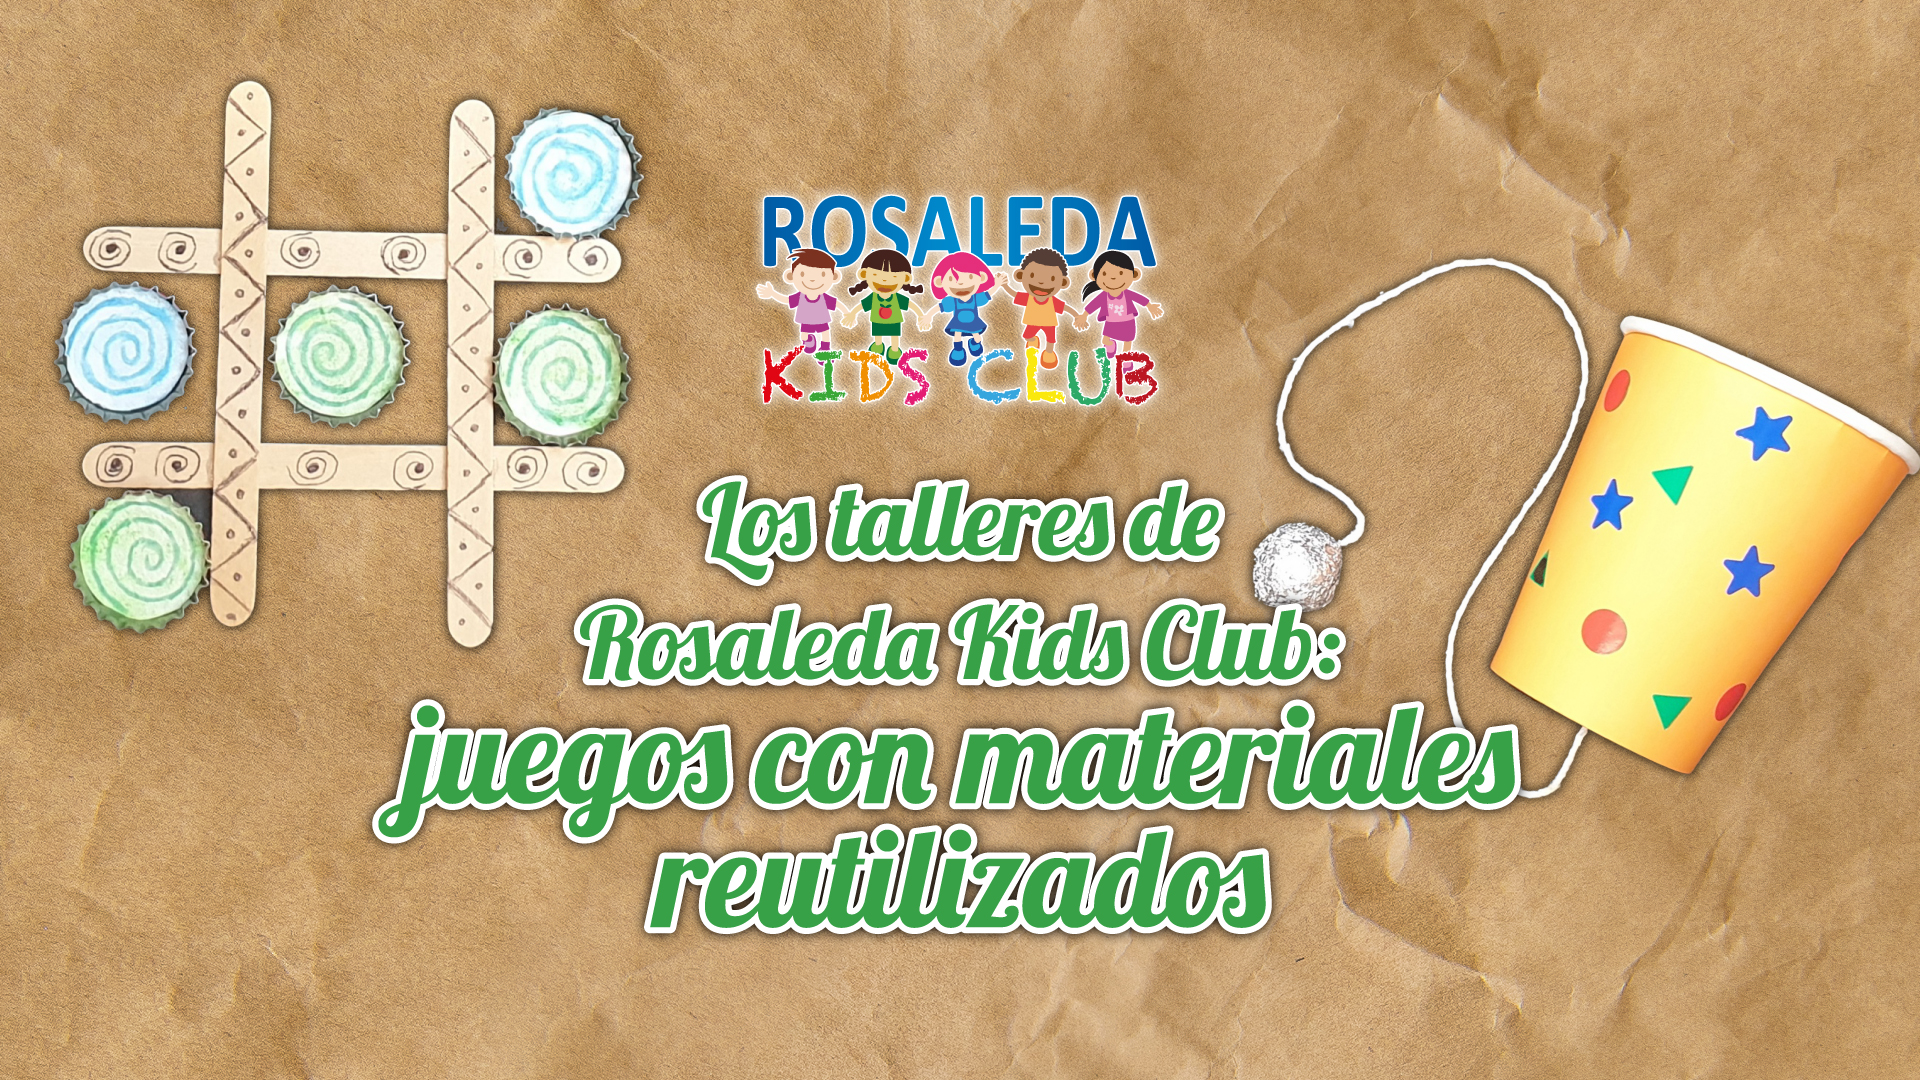 Los talleres de Rosaleda Kids Club: juegos con materiales reutilizados